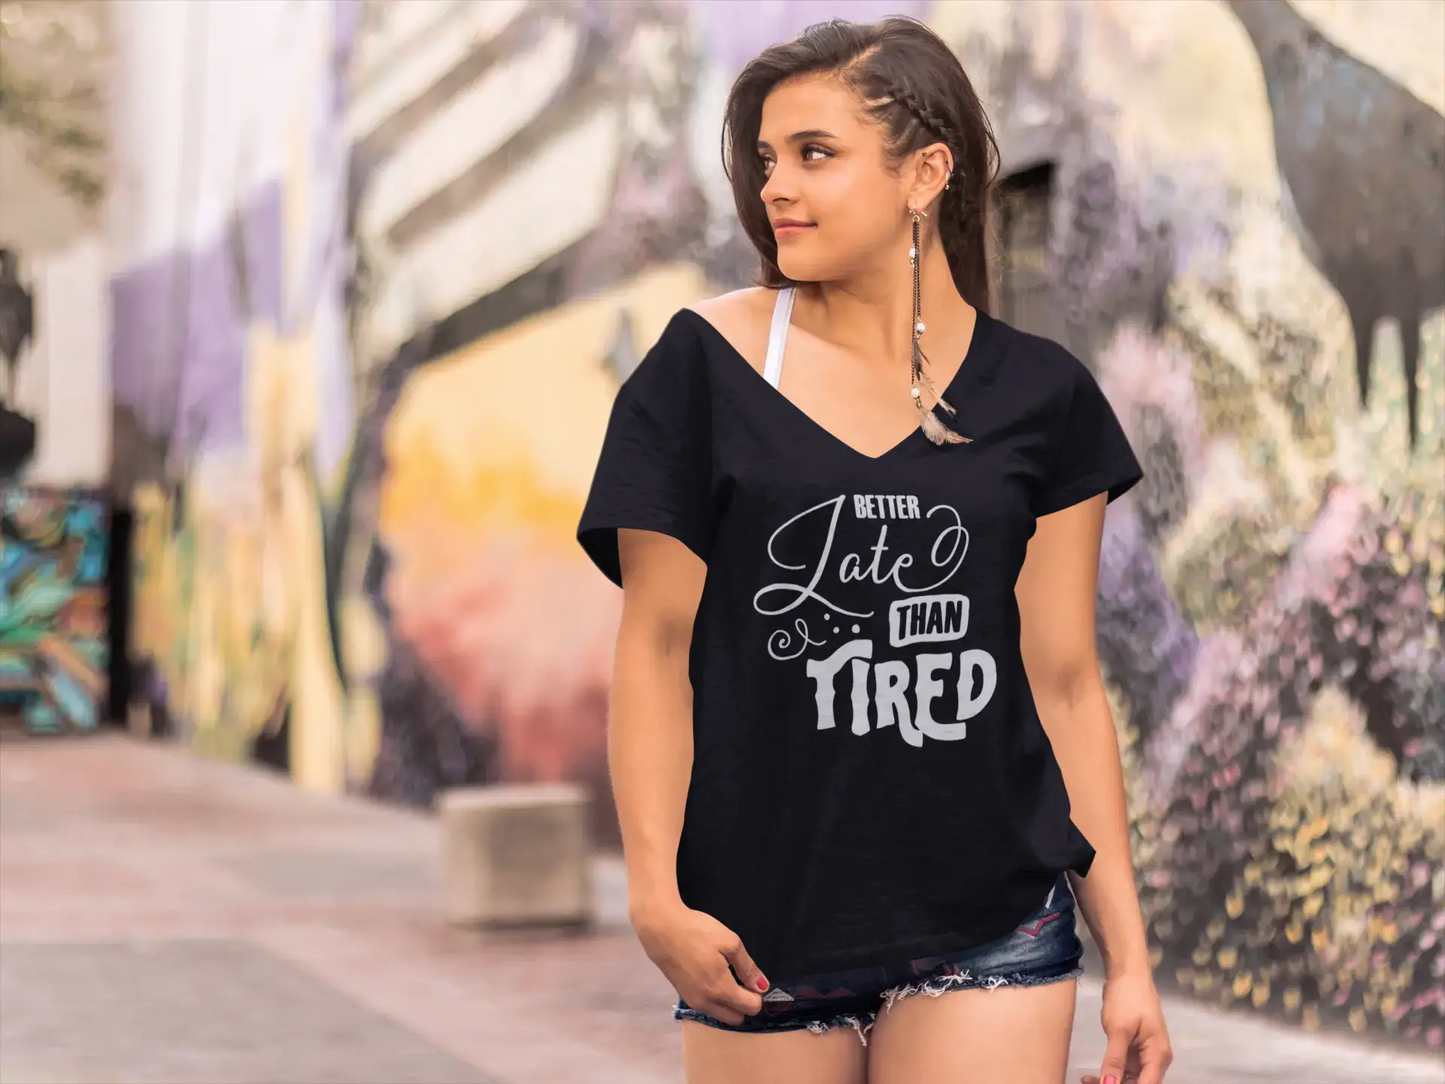 ULTRABASIC Women's T-Shirt Better Late than Tired - Short Sleeve Tee Shirt Tops